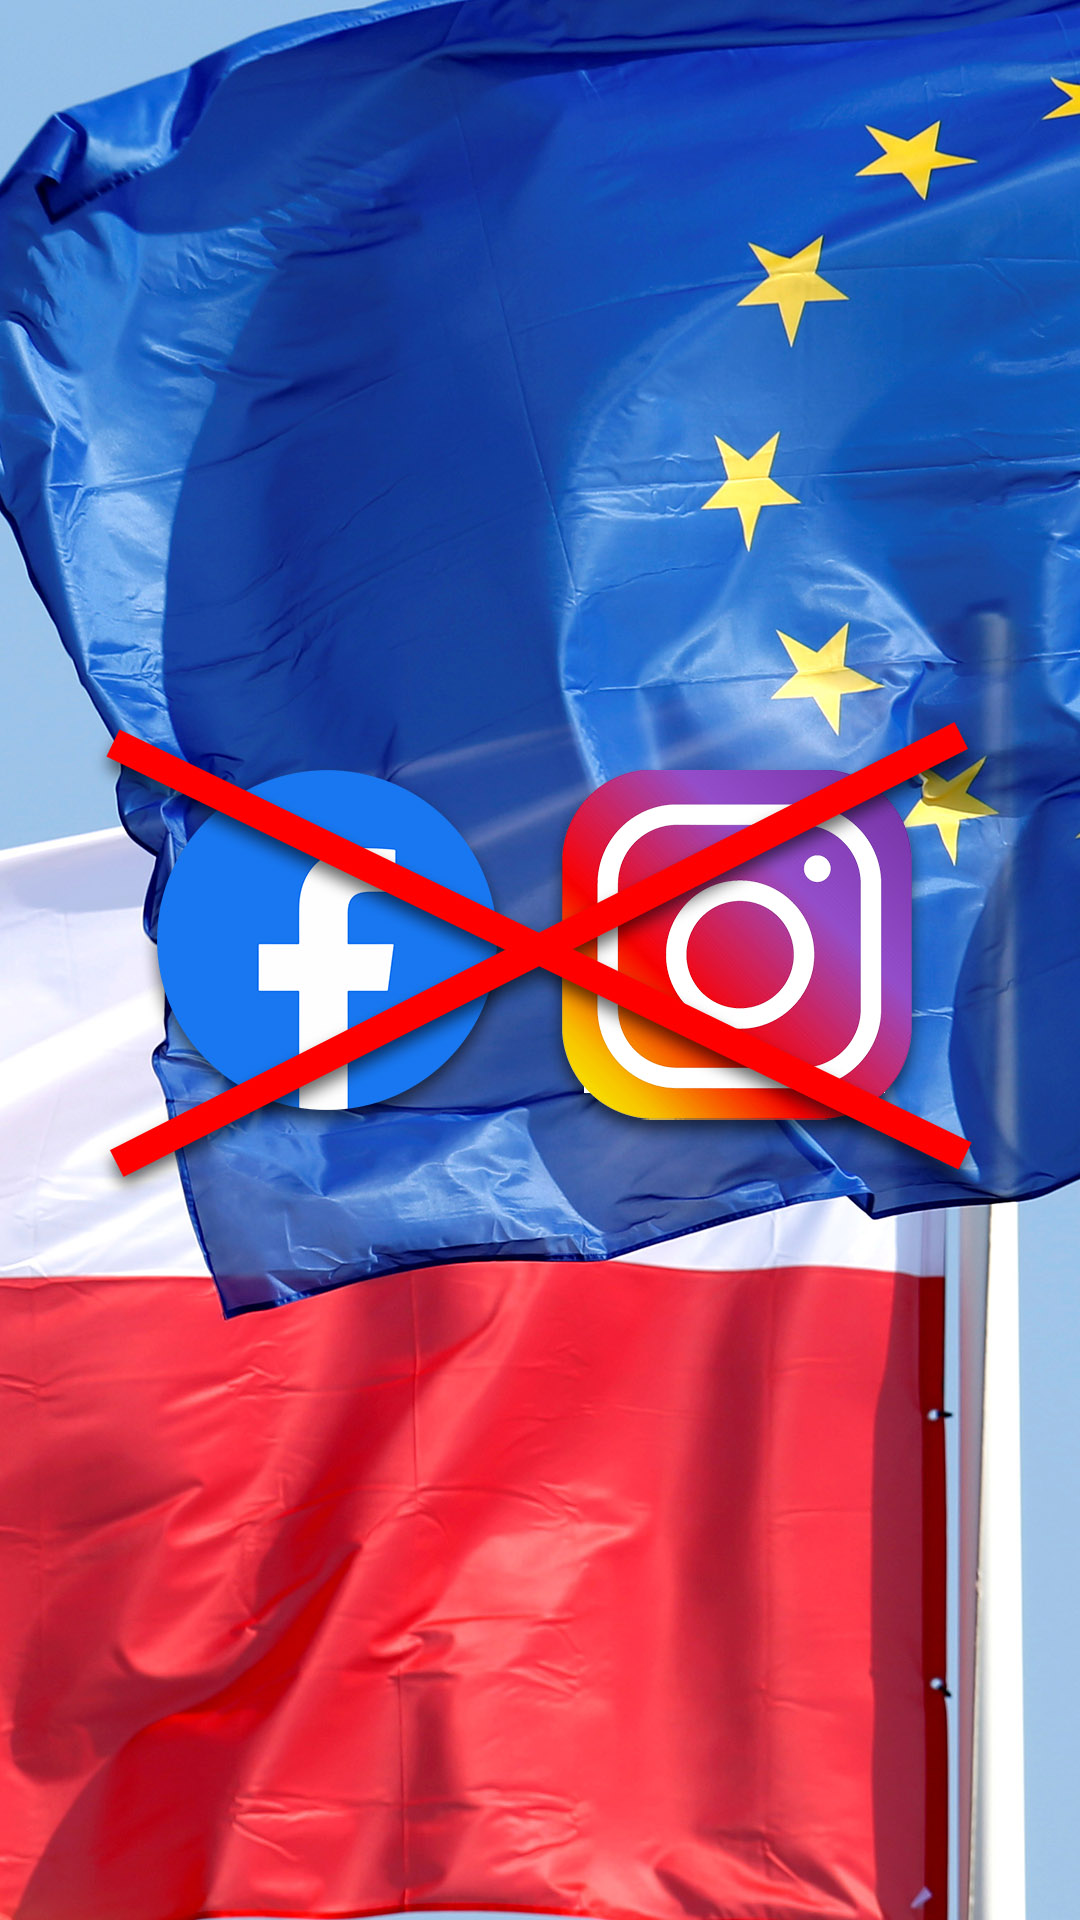 Facebook i Instagram znikną z Europy